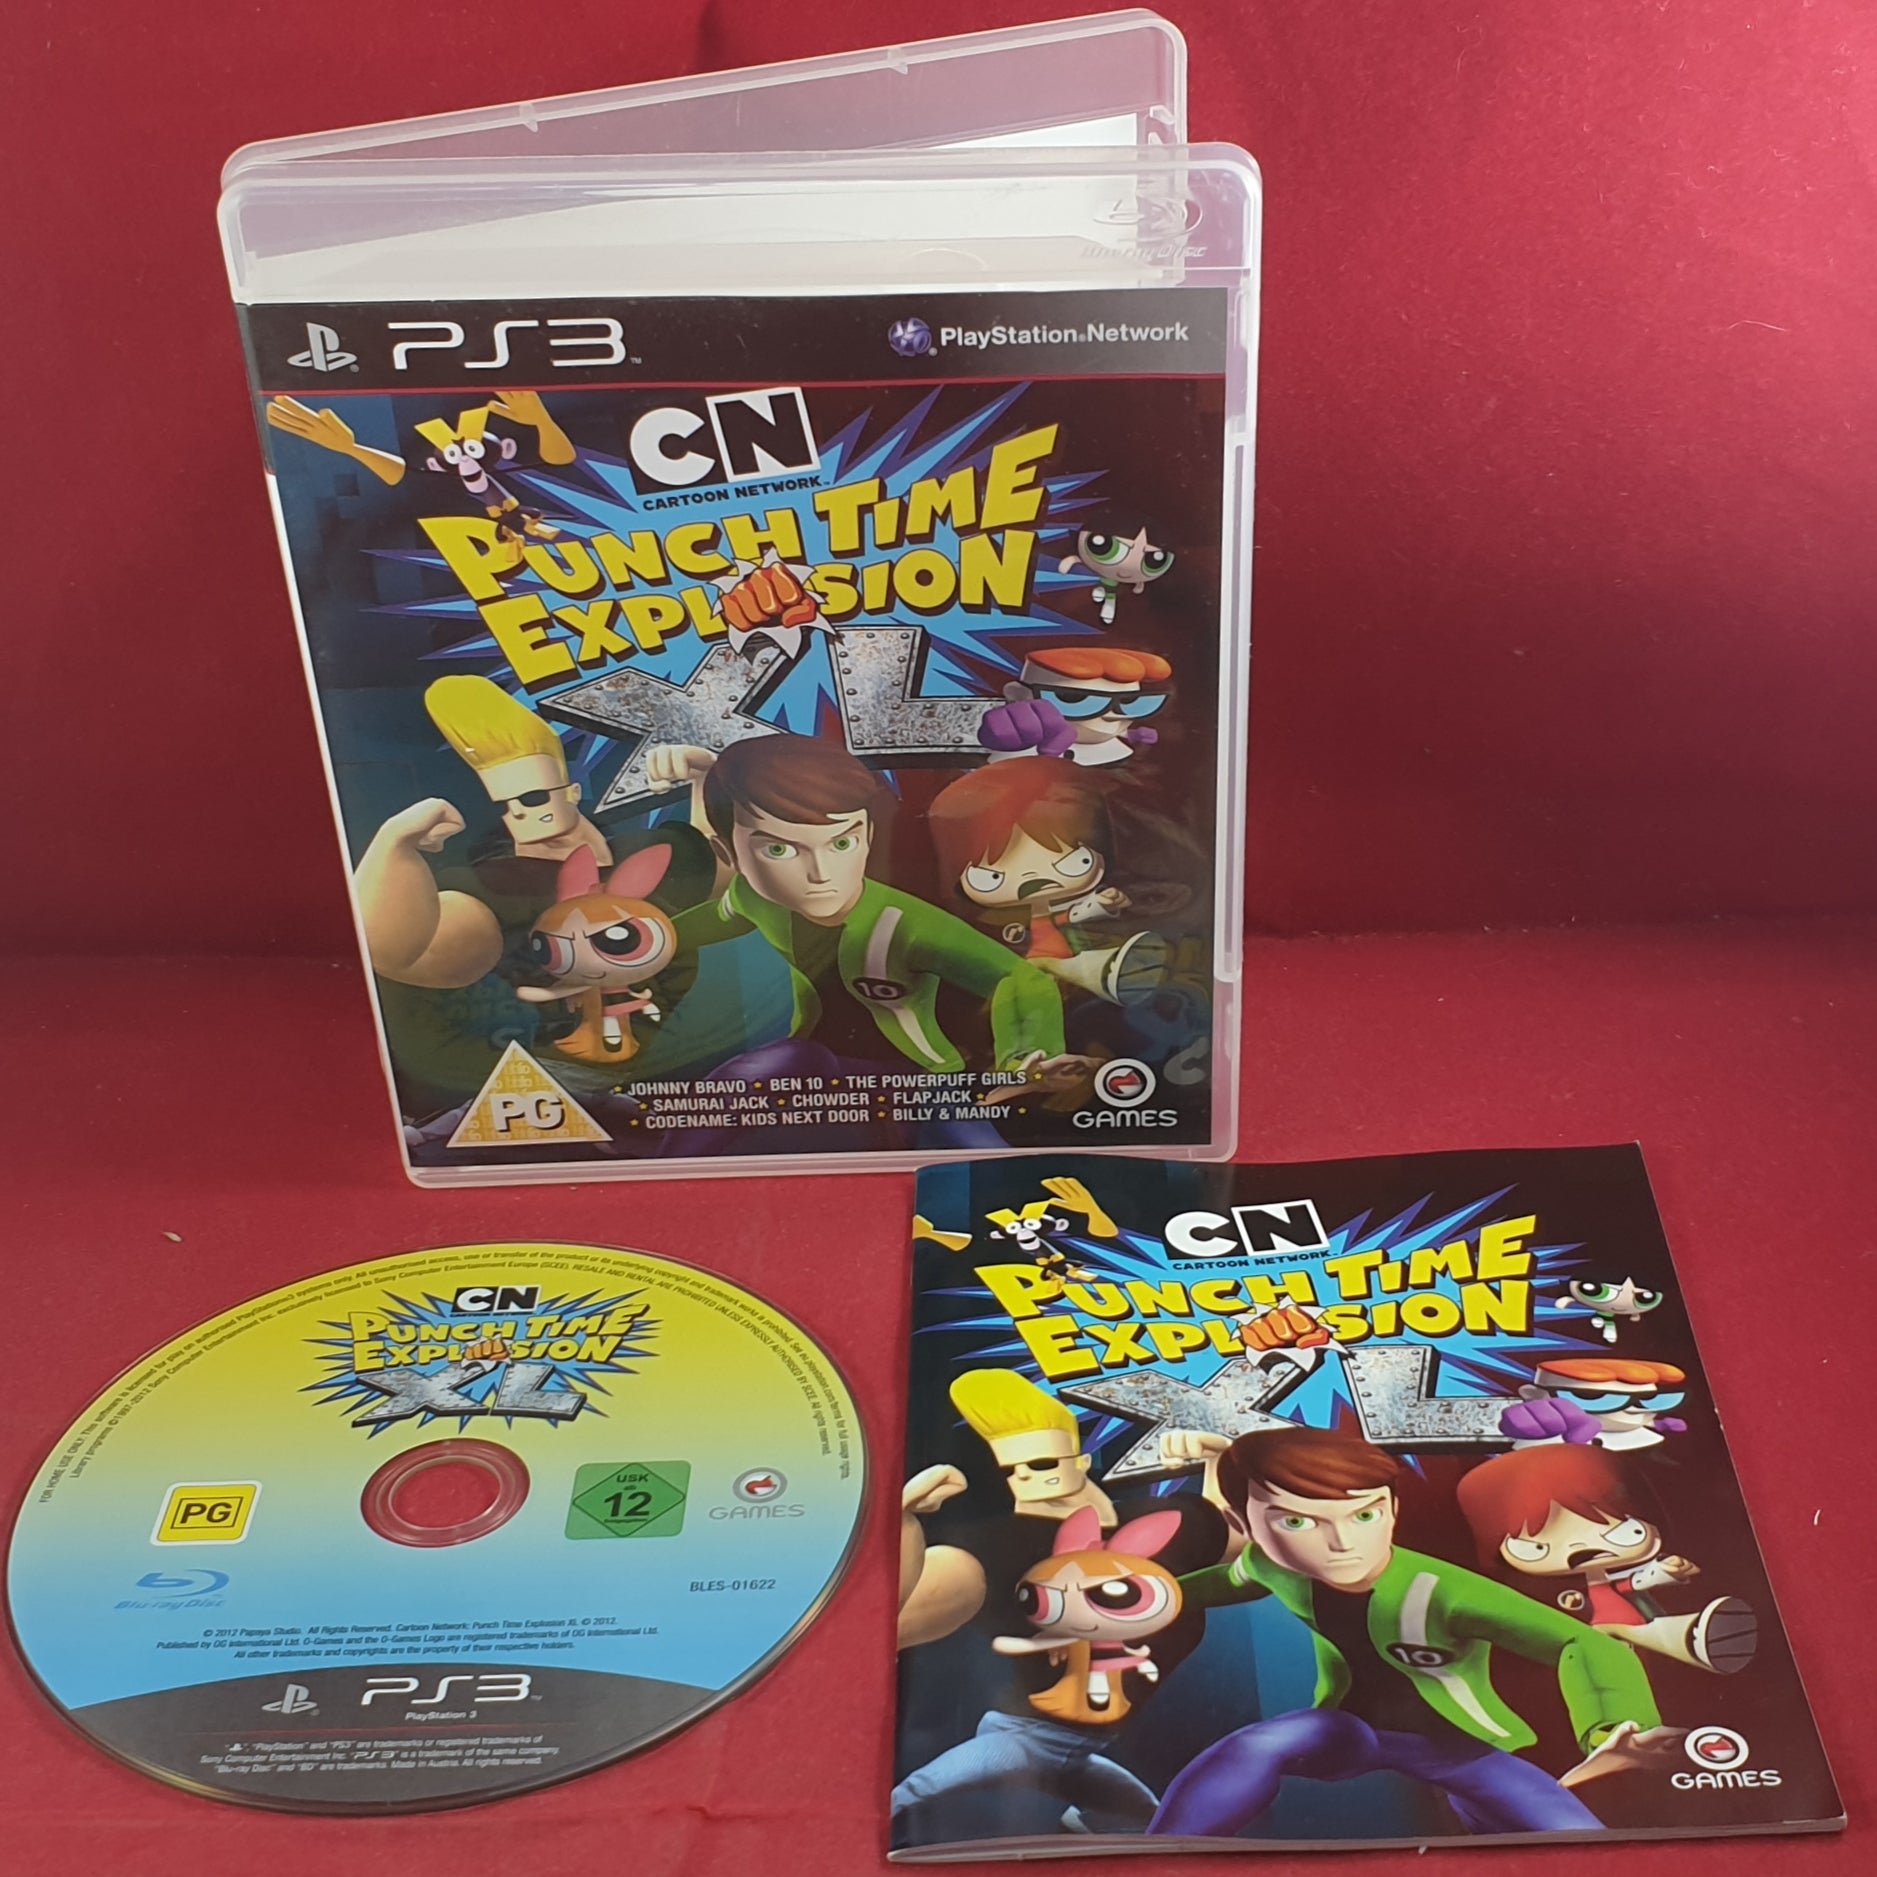 Jogo Cartoon Network: Punch Time Explosion XL - PS3 Seminovo - Sl Shop - SL  Shop - A melhor loja de smartphones, games, acessórios e assistência técnica